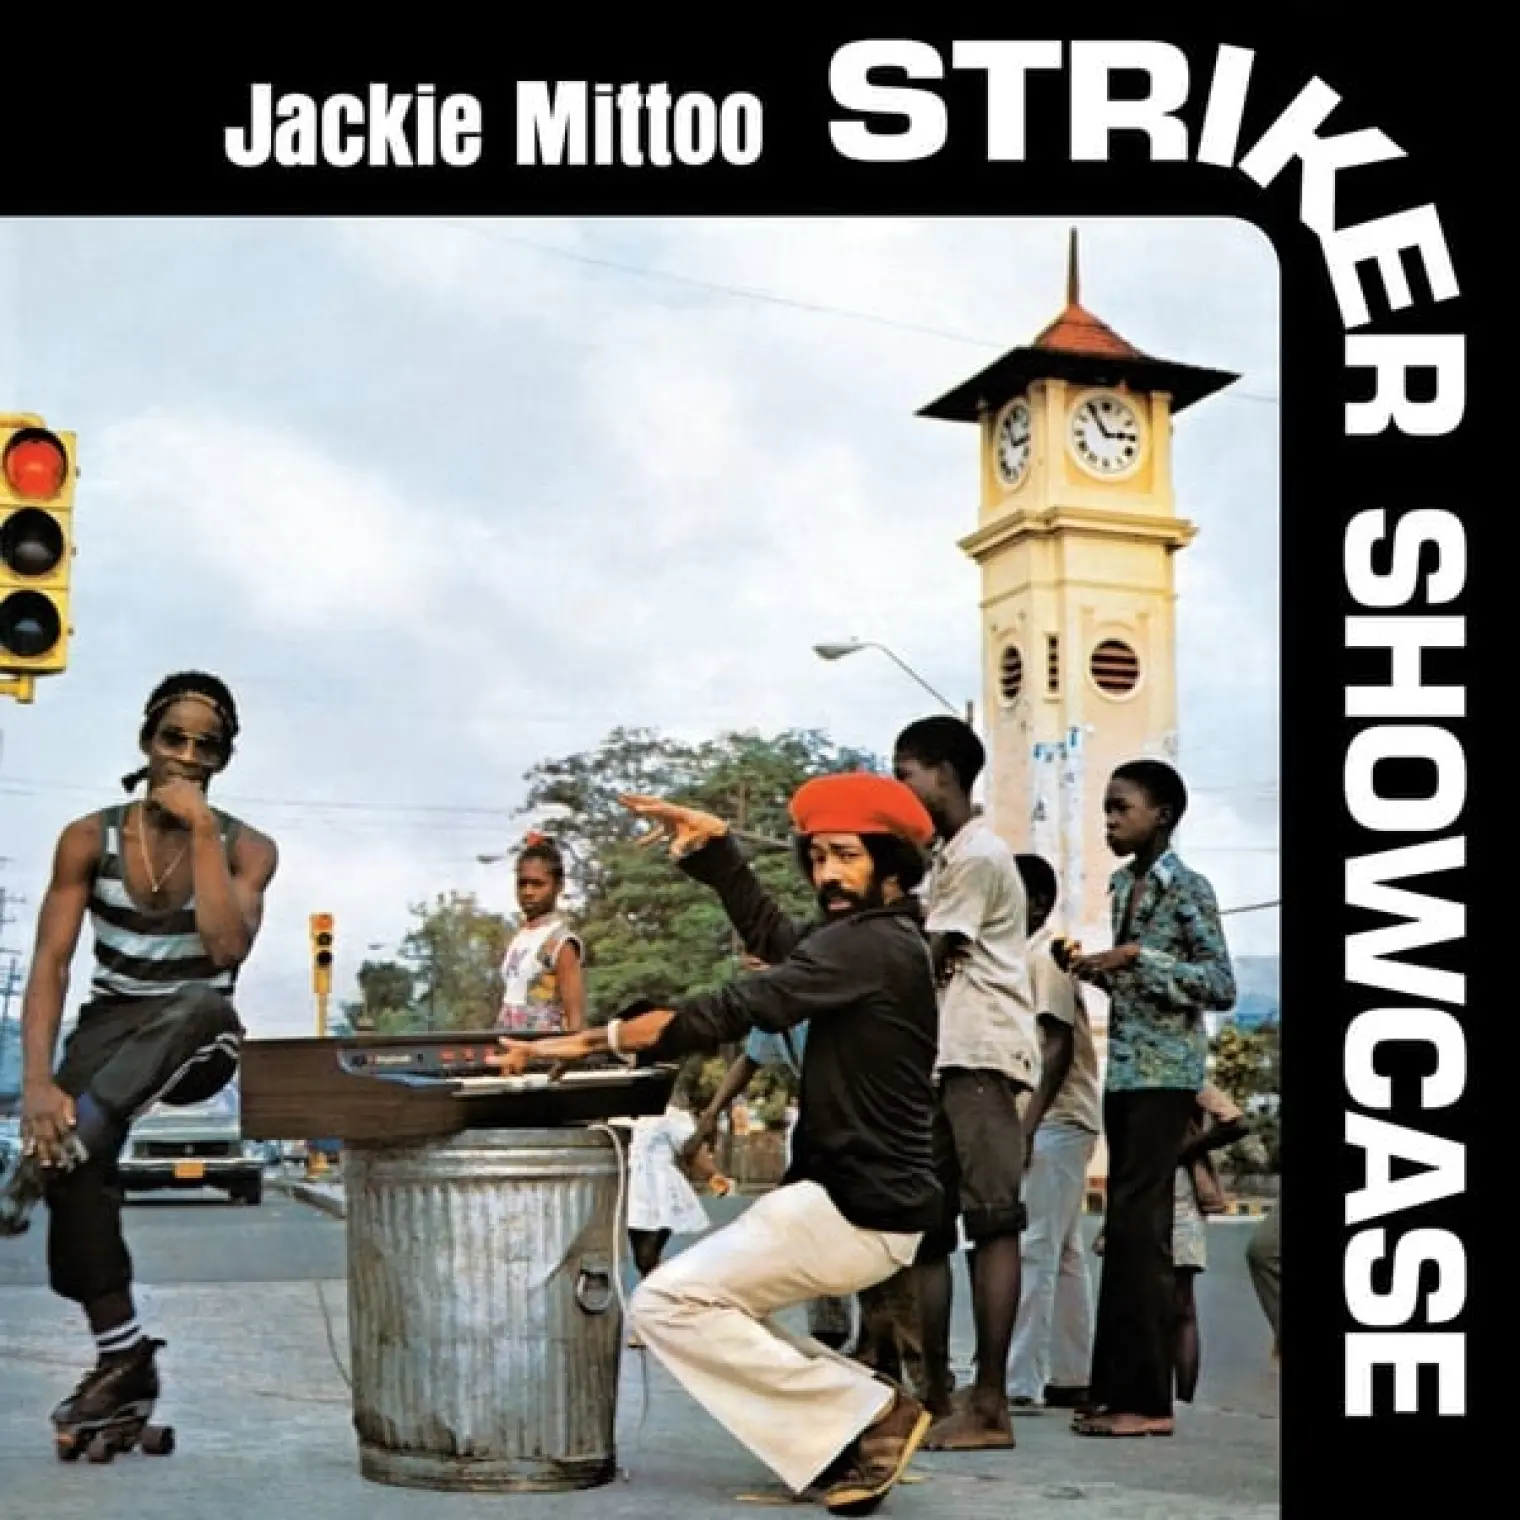 Striker Showcase -  Jackie Mittoo 